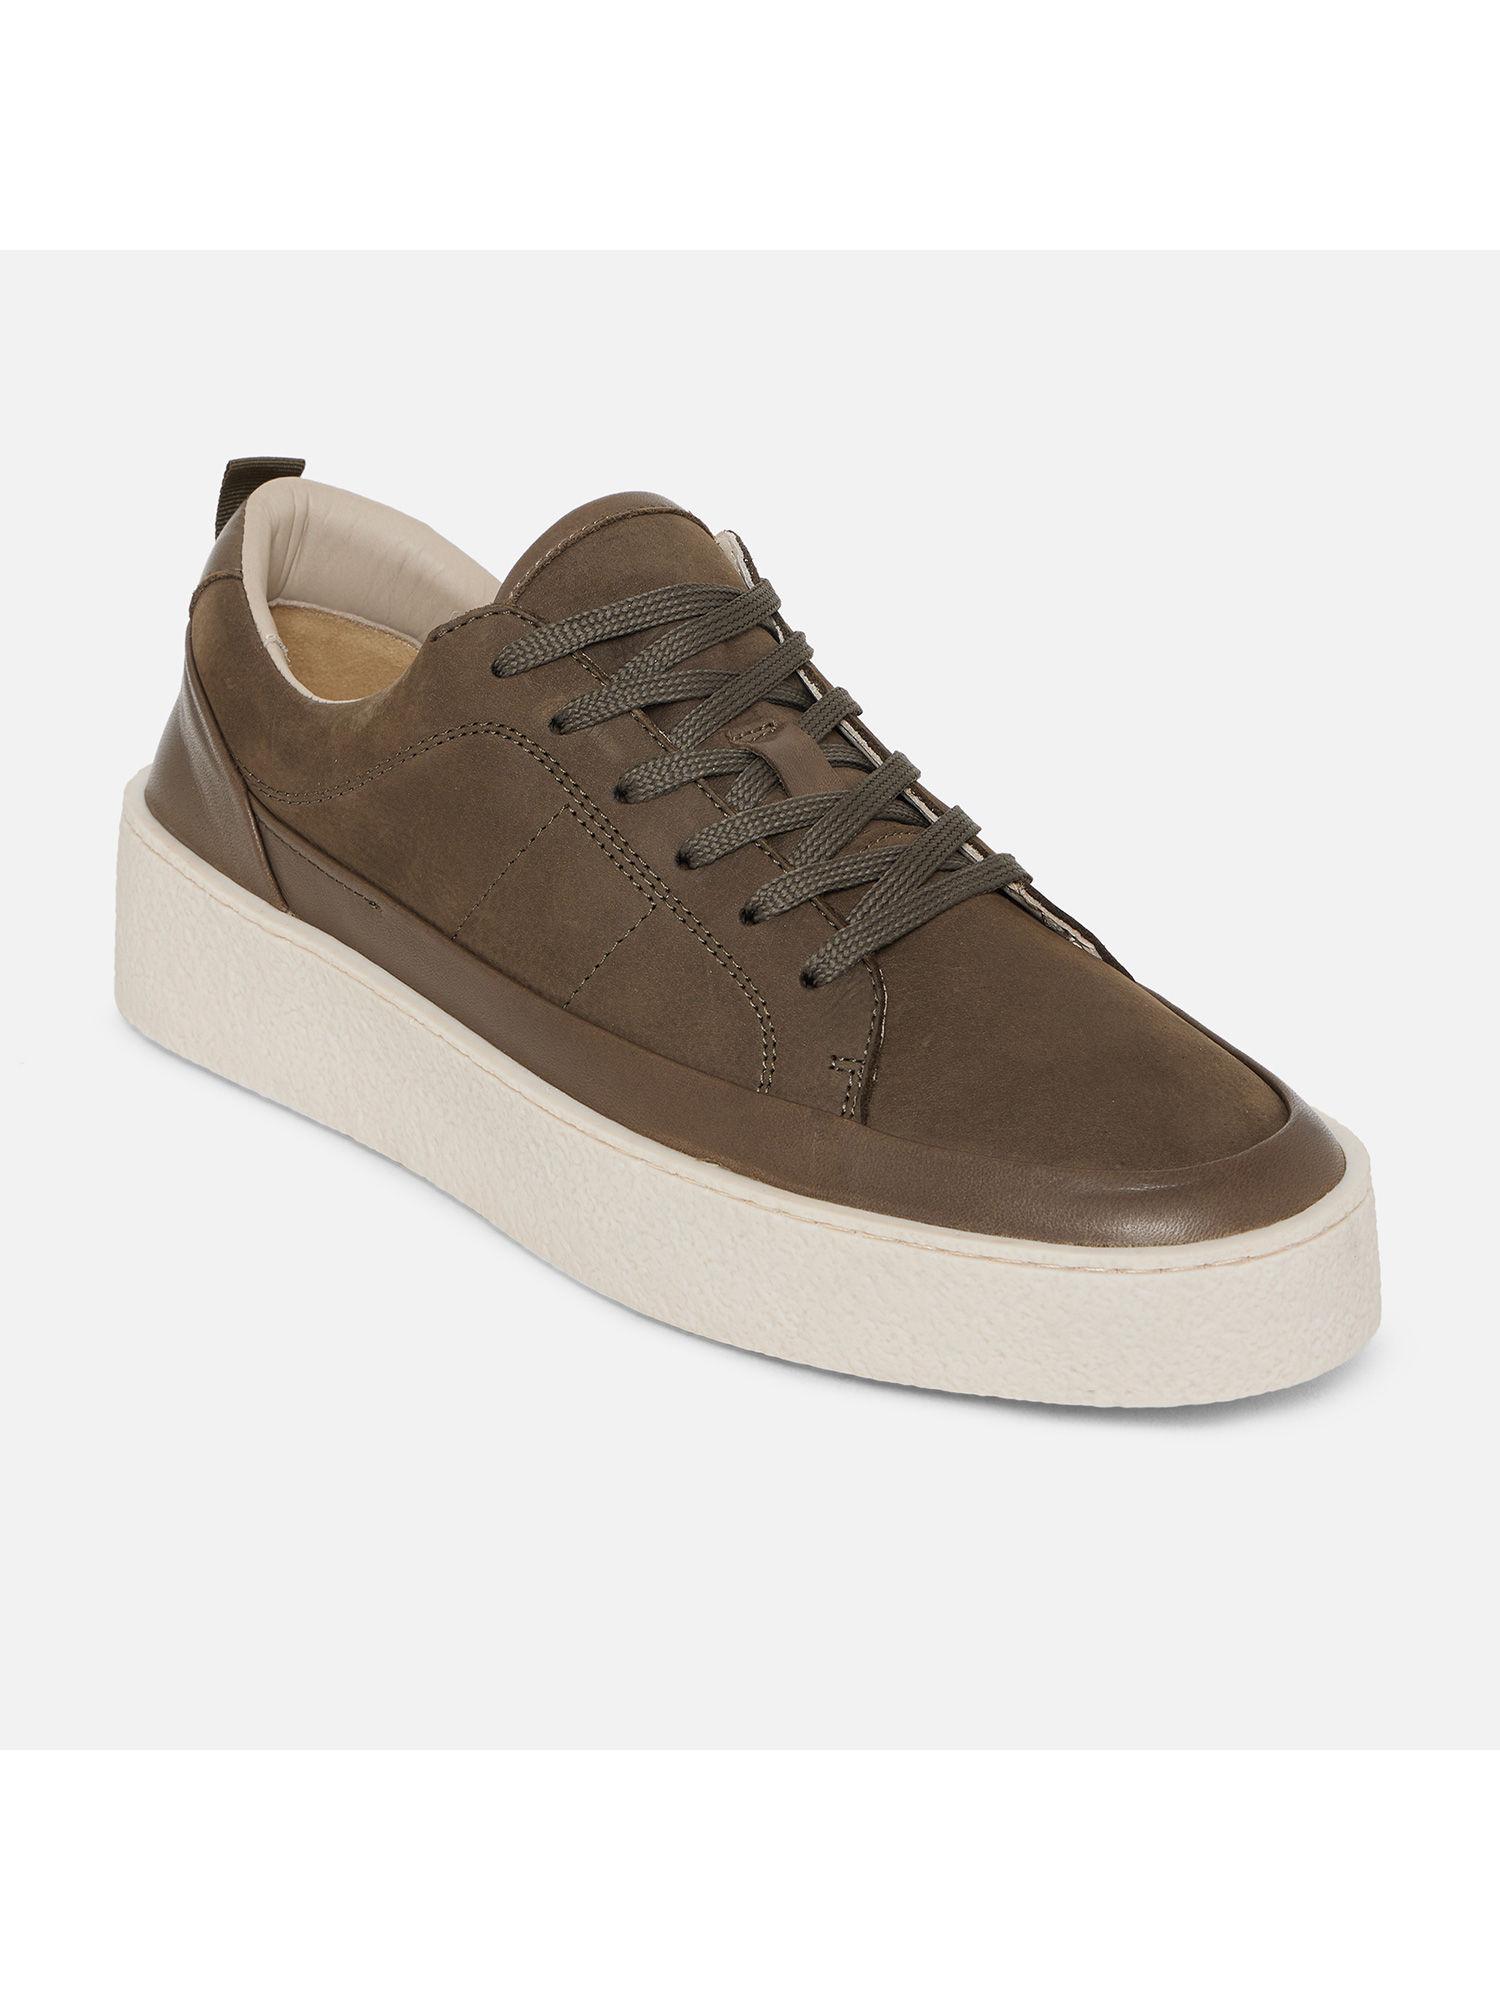 wicerradien solid brown sneakers